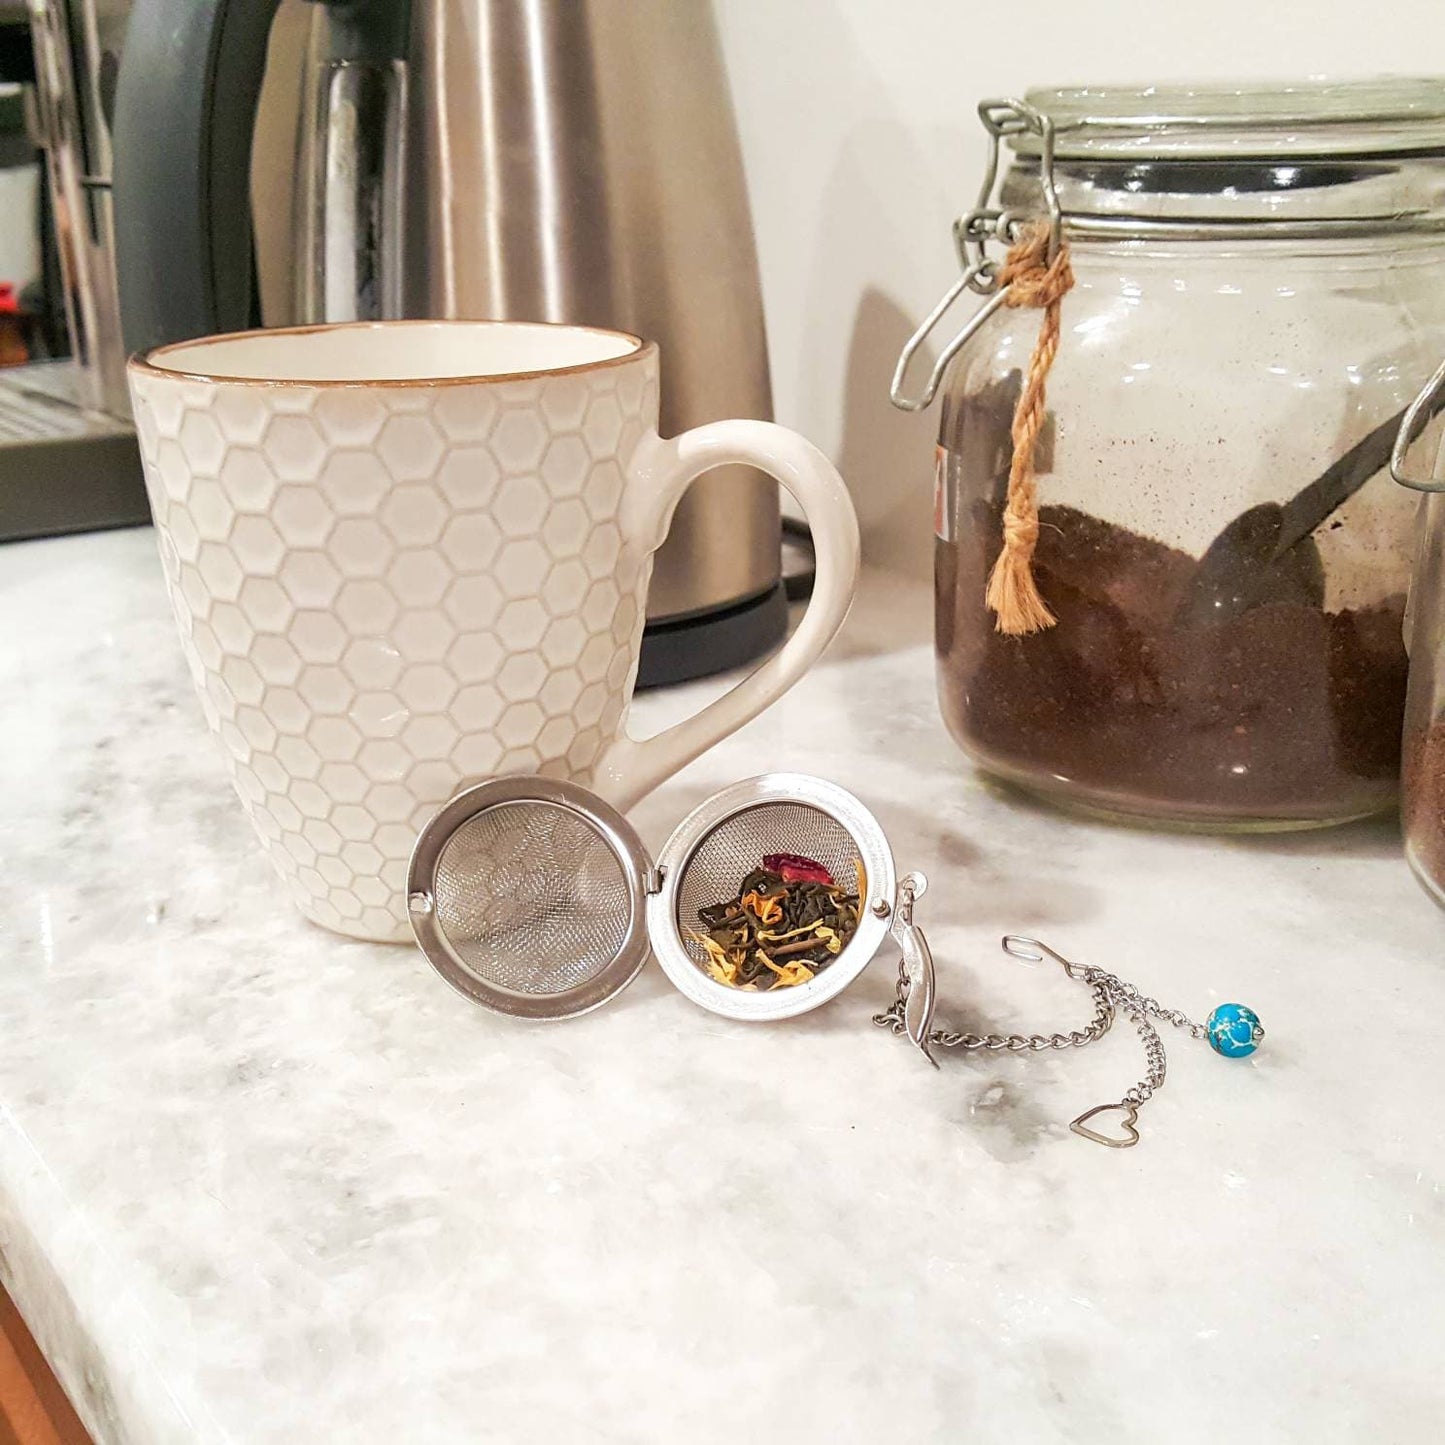 WANDERLUST Stainless Steel Mesh Tea Ball Tea Infuser Strainers Tea Strainer | with real Ocean Jasper stone handmade pendant | traveler gift